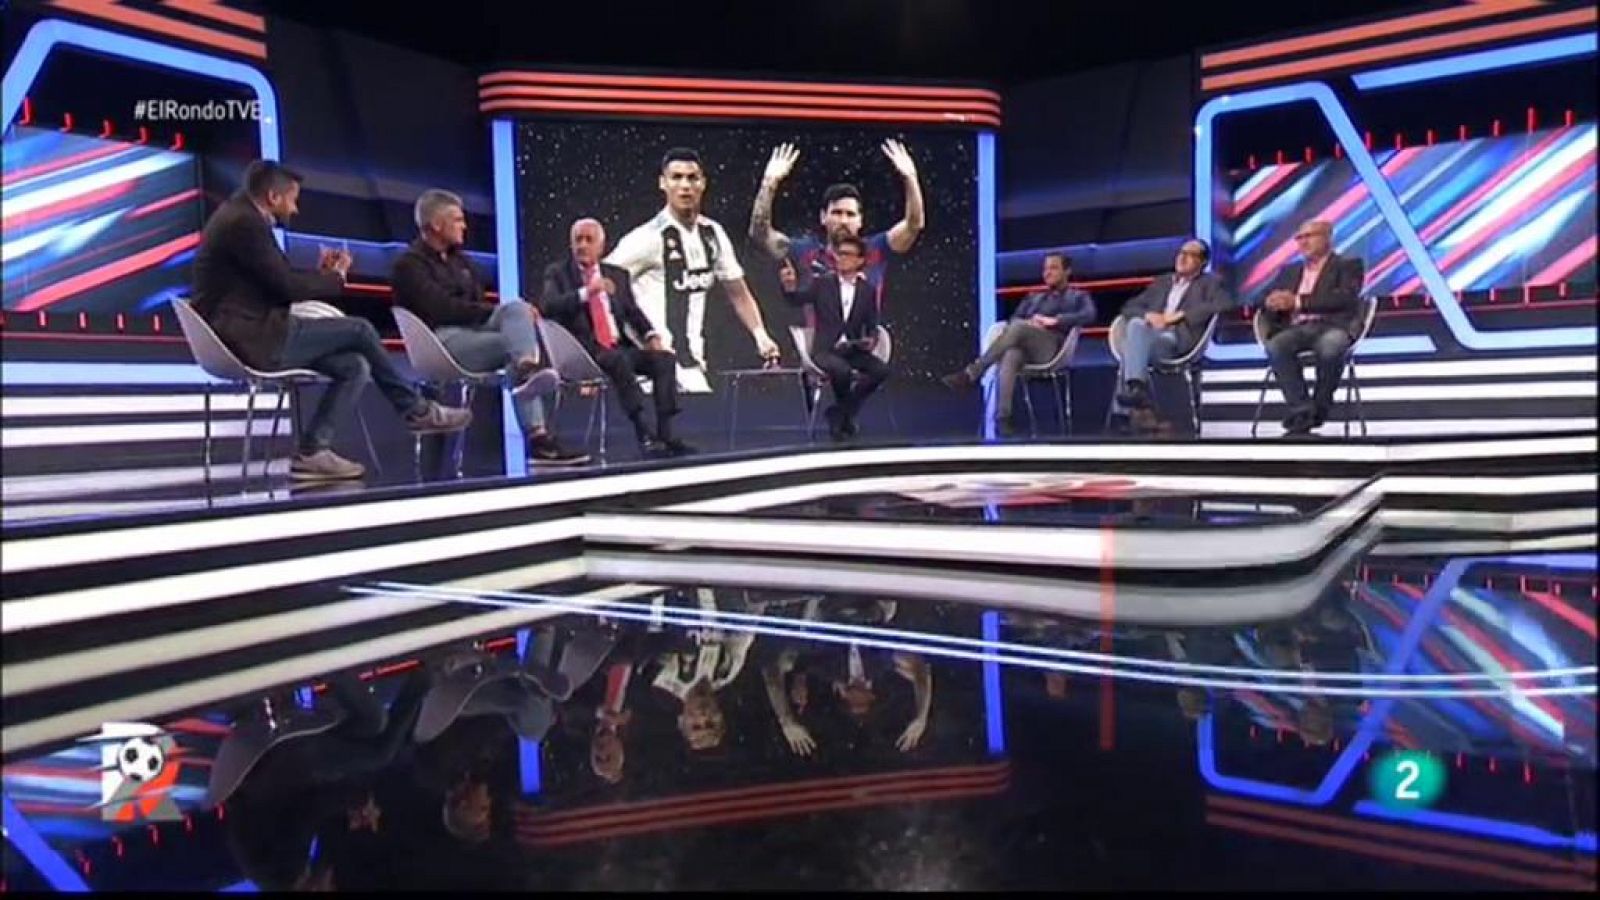 El Rondo | Qui guanyarà el premi "The Best"? - RTVE.es